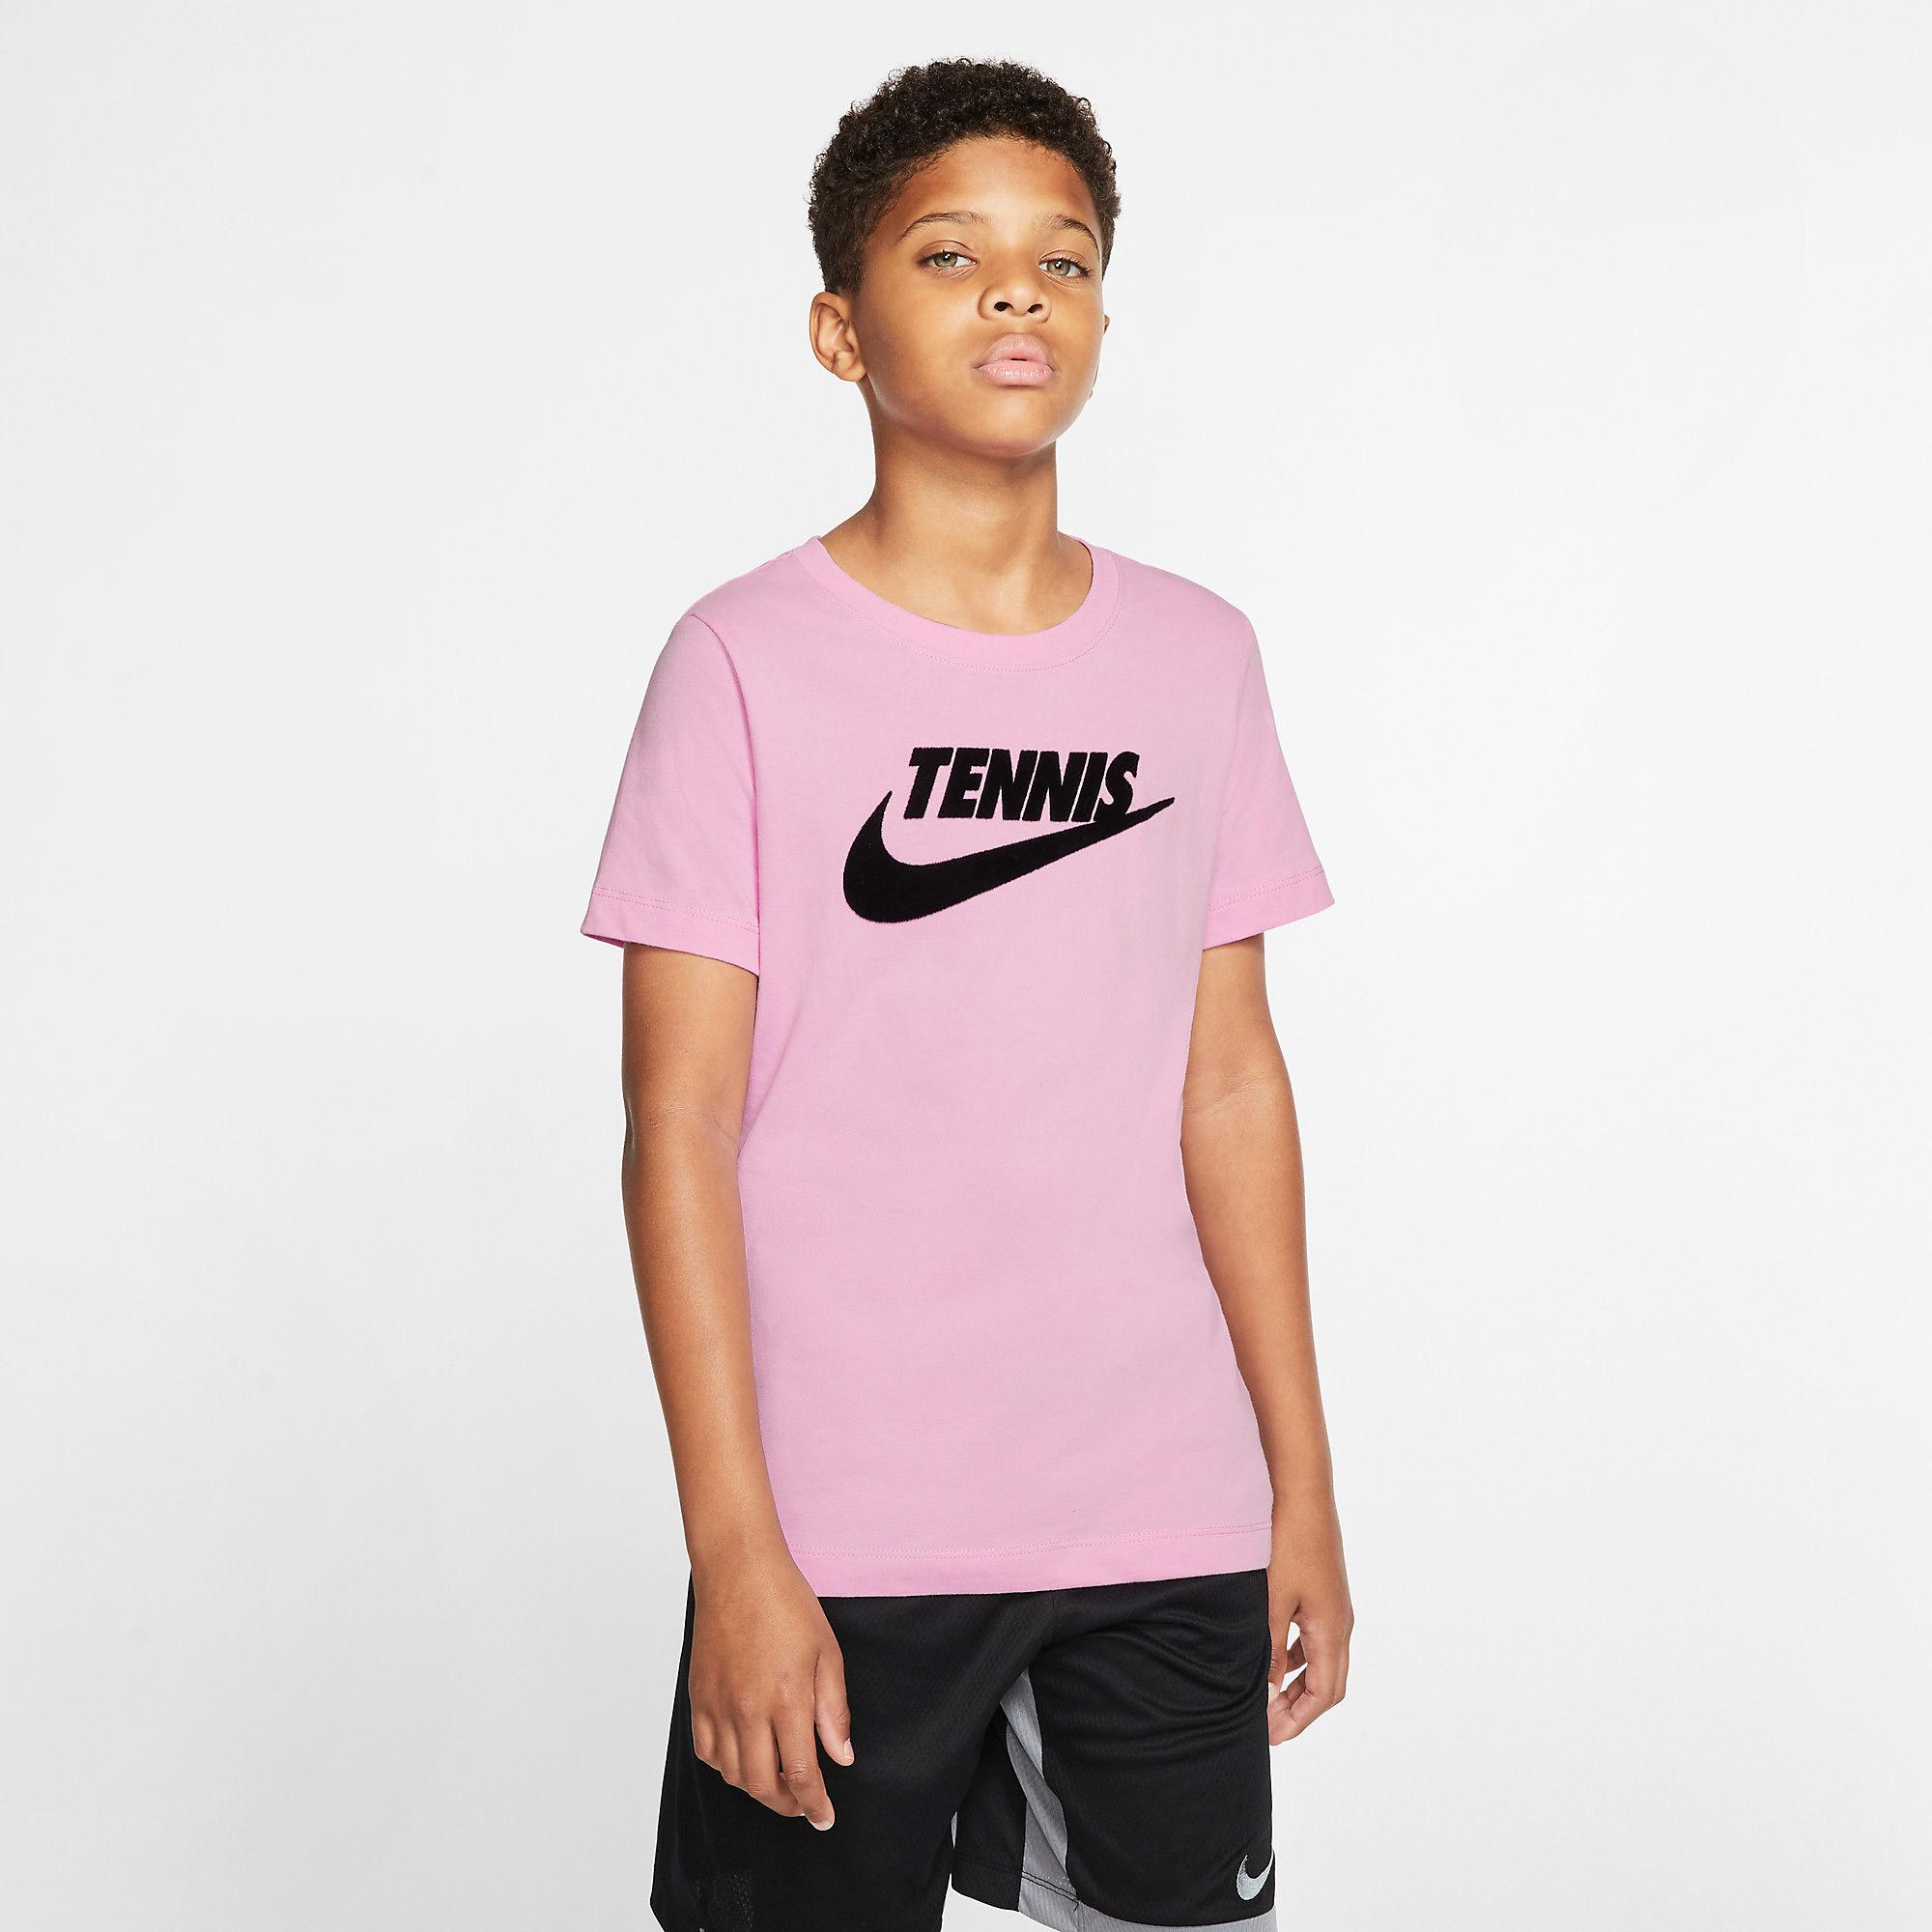 pink t shirt boys